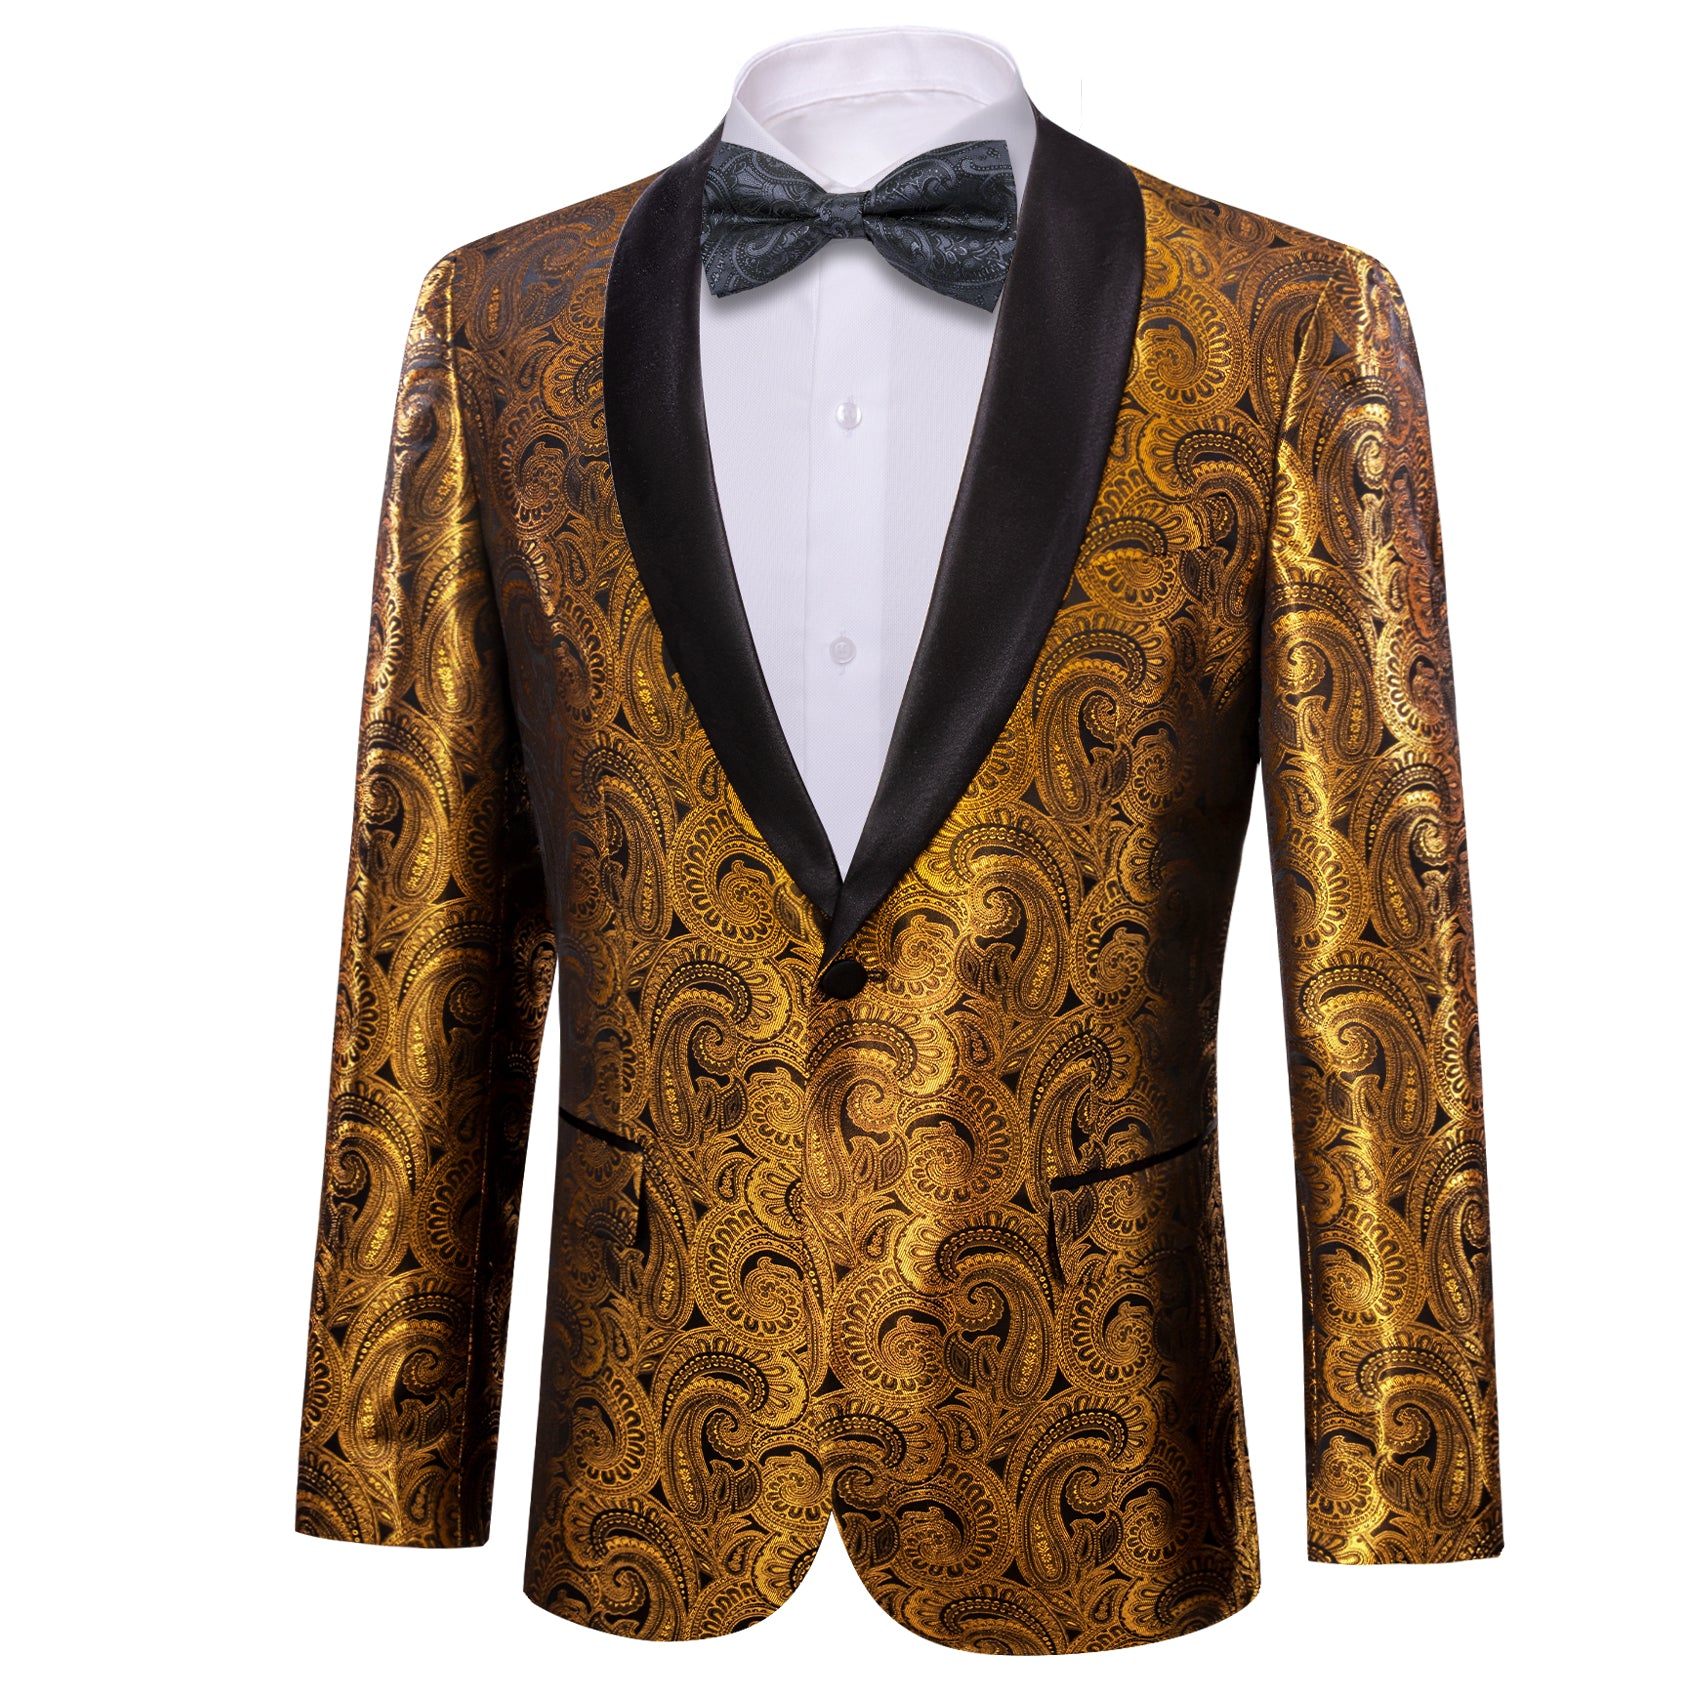 Men Rose Gold Suit Men 3 Piece Suit Men Stylish Suit Men Slim Fit Suit Men  Classic Suit 2 Button Suit Men Elegant Suit Men Wedding Suit - Etsy